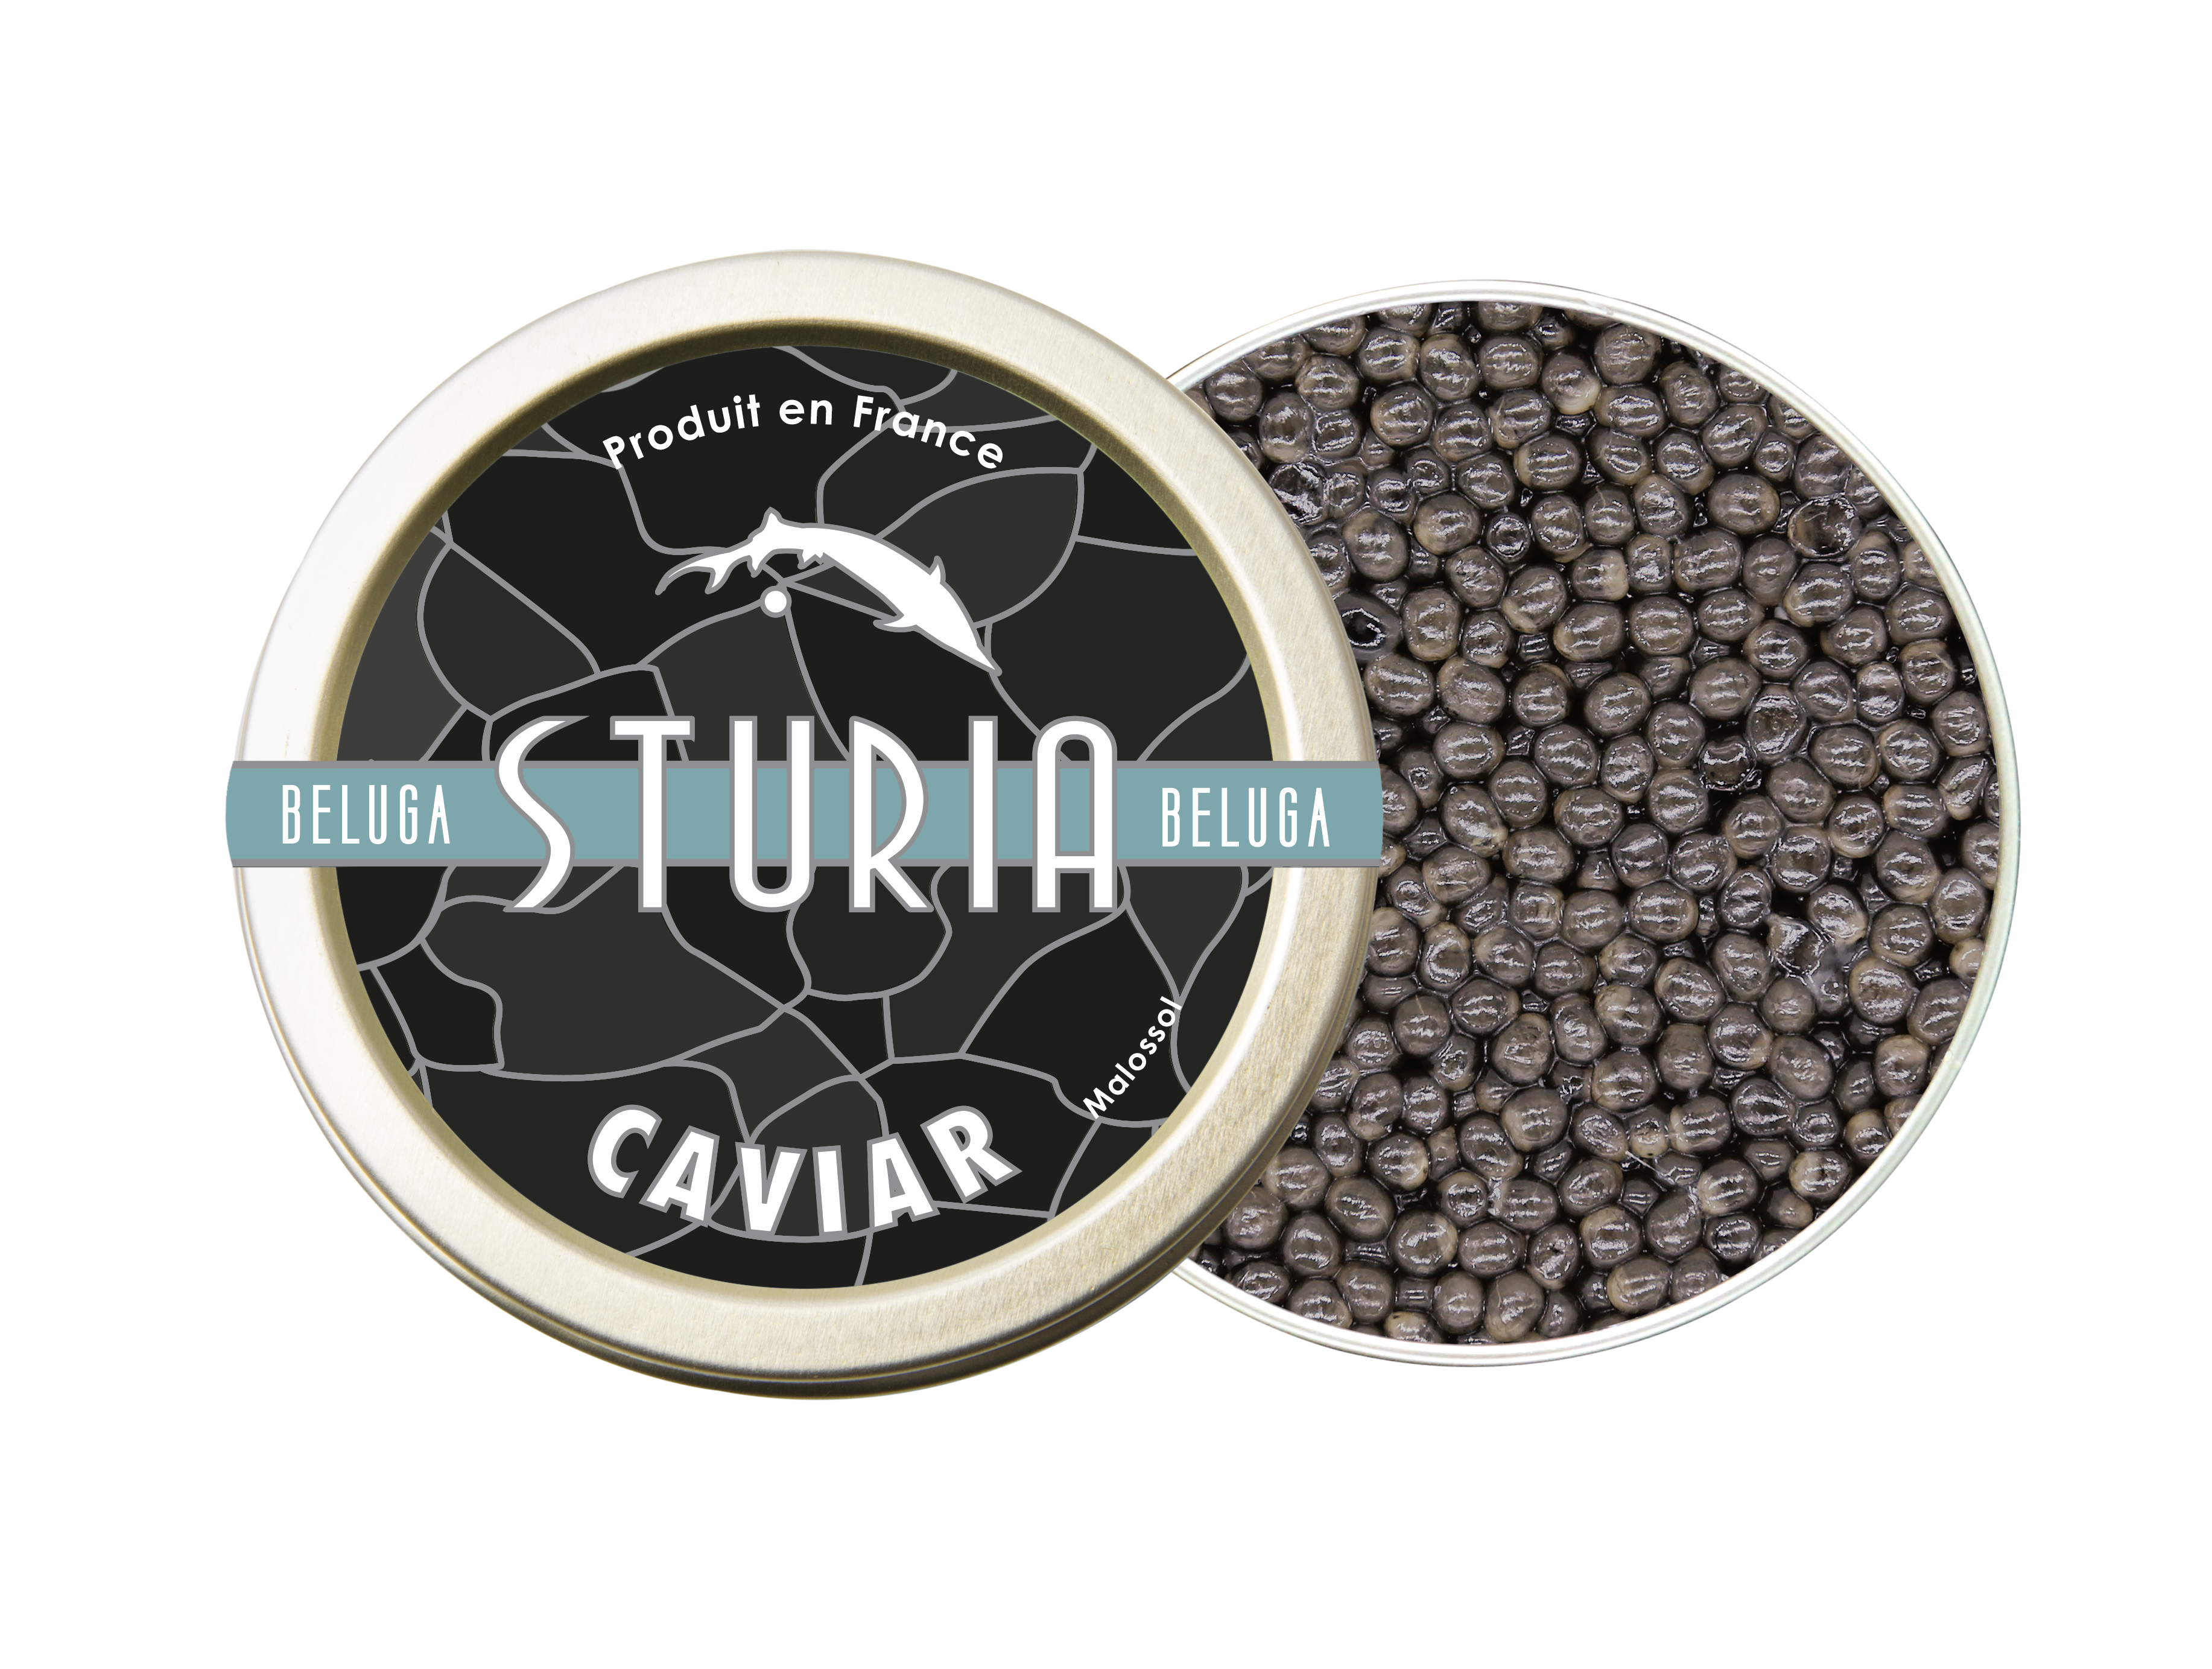 Caviar Sturia Beluga - Sturia